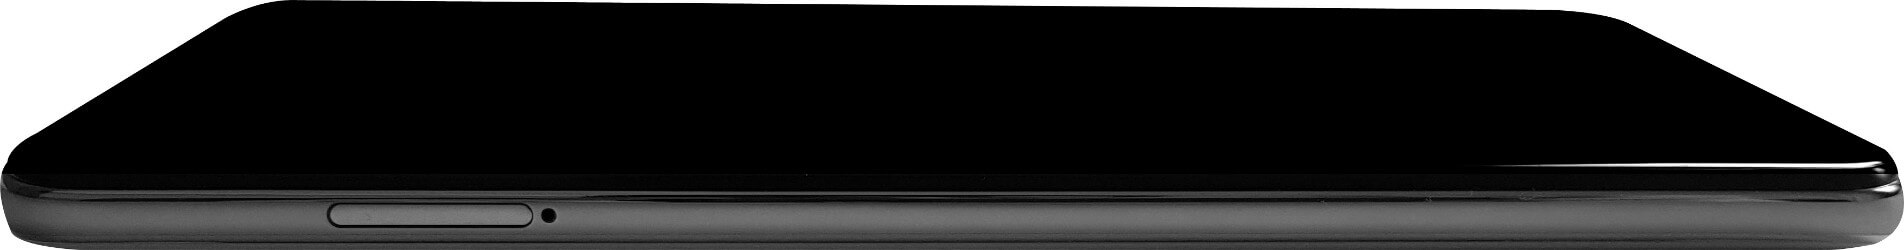 Review Redmi Note 9s: Gran opción en la gama media